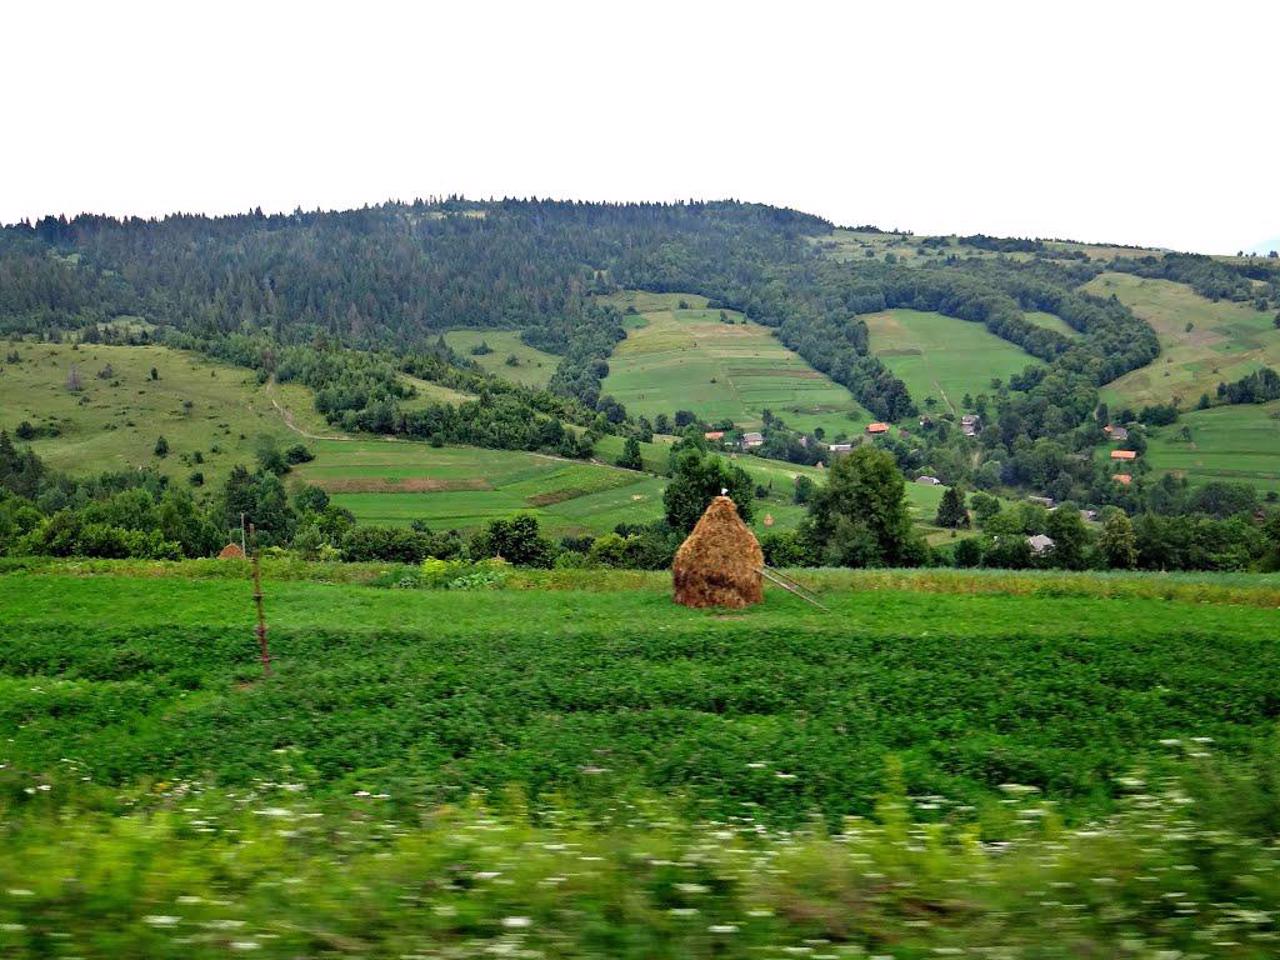 Osii village